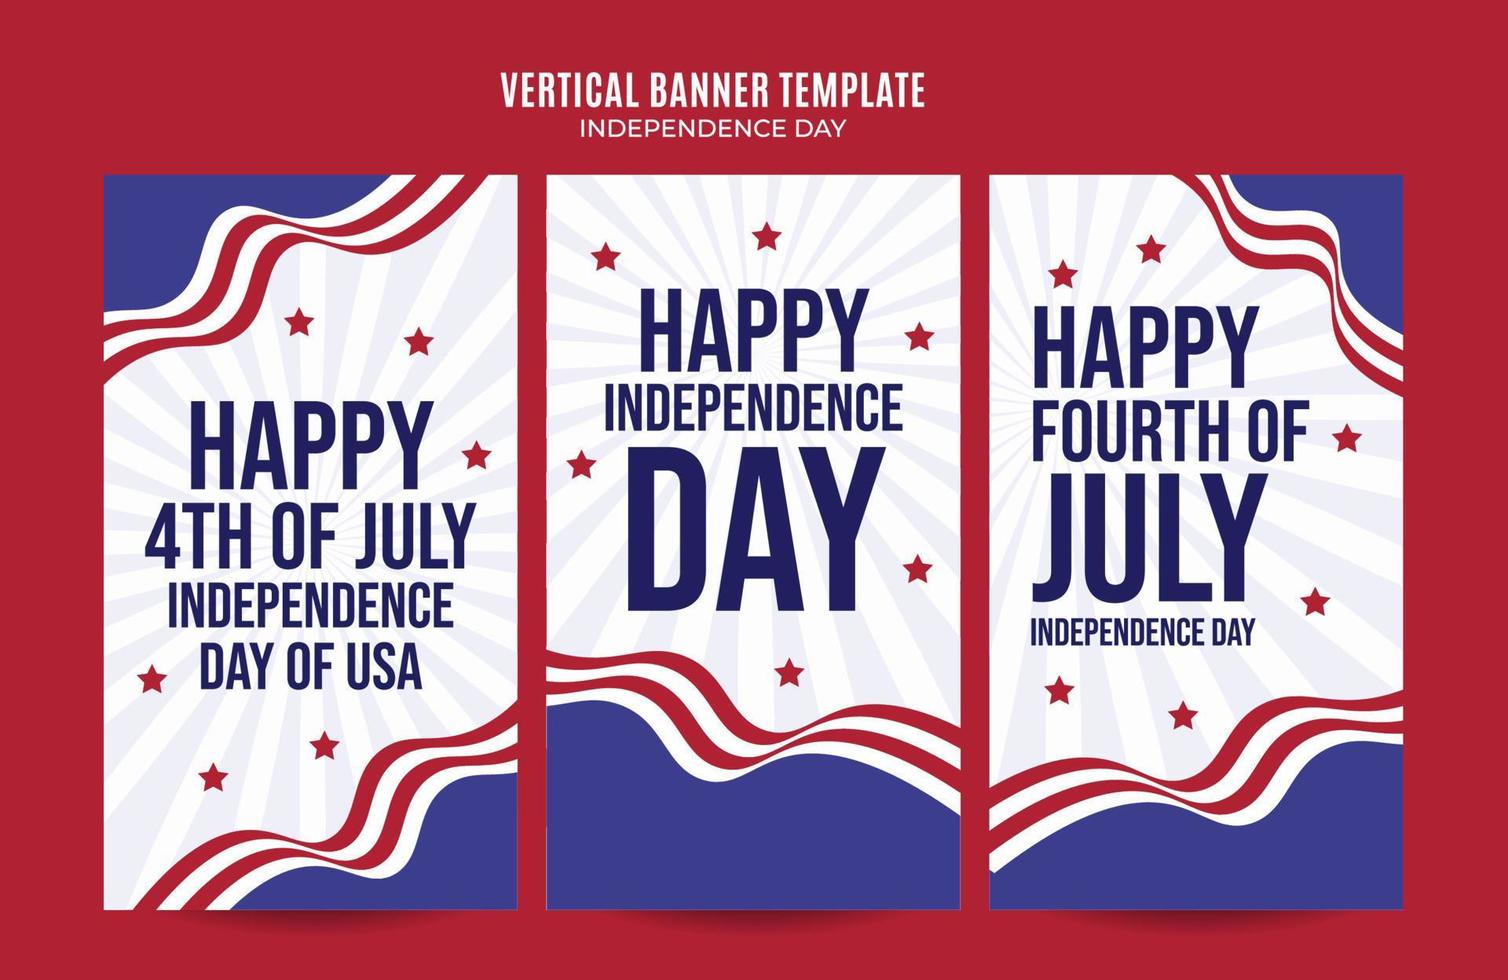 gelukkig 4 juli - onafhankelijkheidsdag usa webbanner voor sociale media verticale poster, banner, ruimtegebied en achtergrond vector